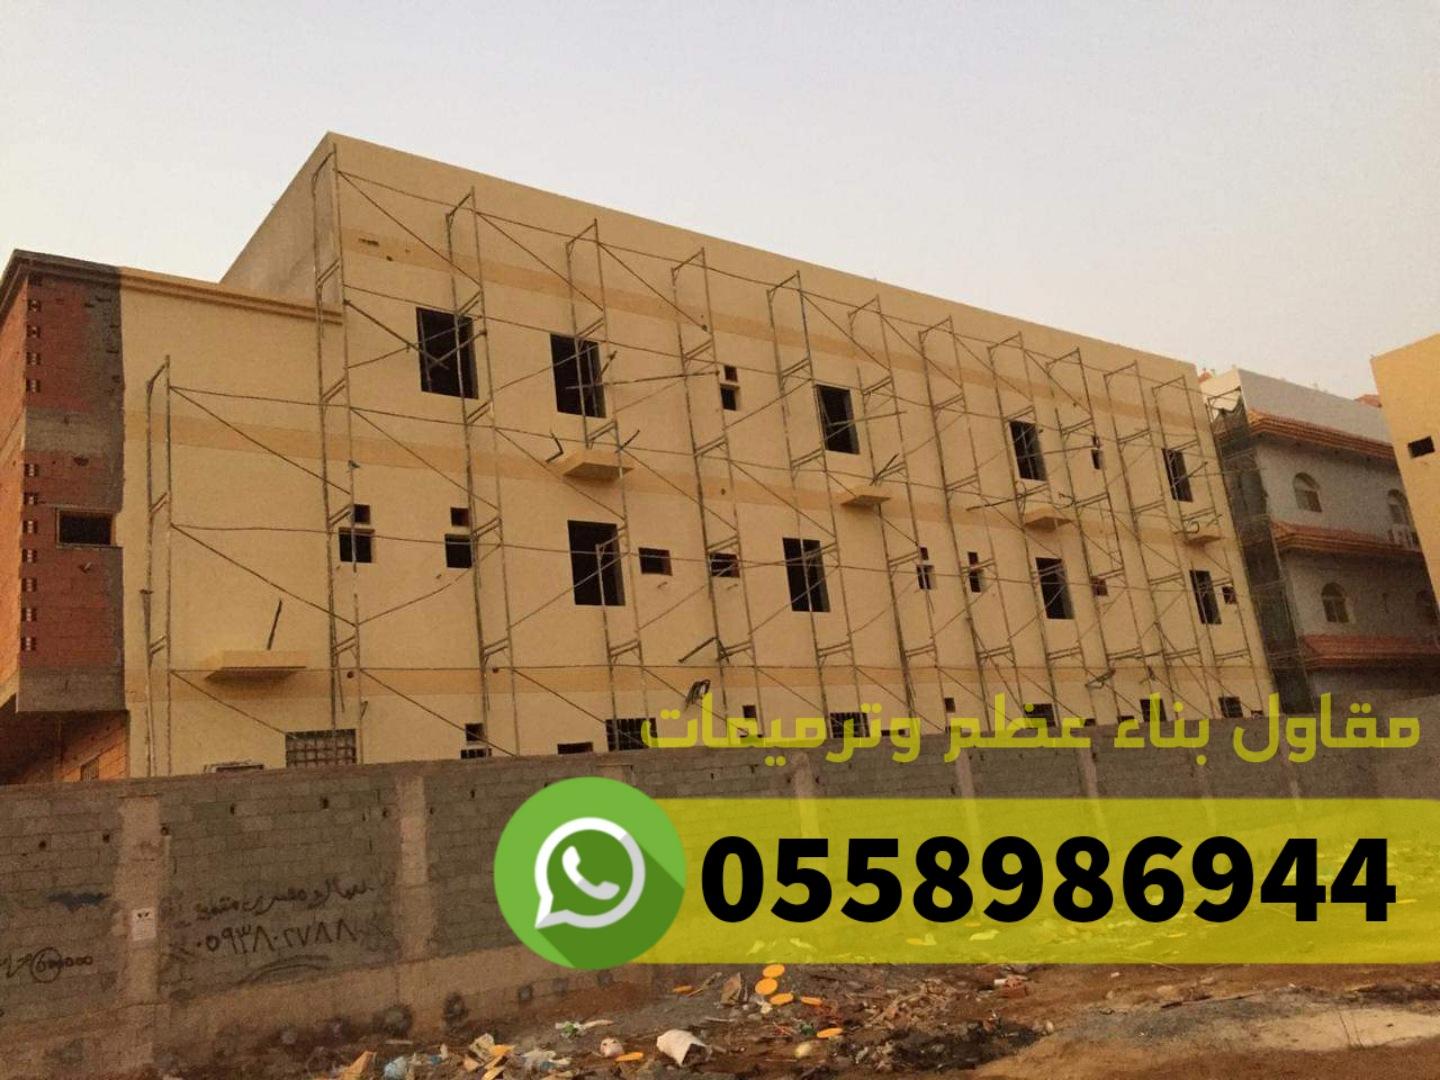 مقاول معماري في جدة, 0558986944 786140036